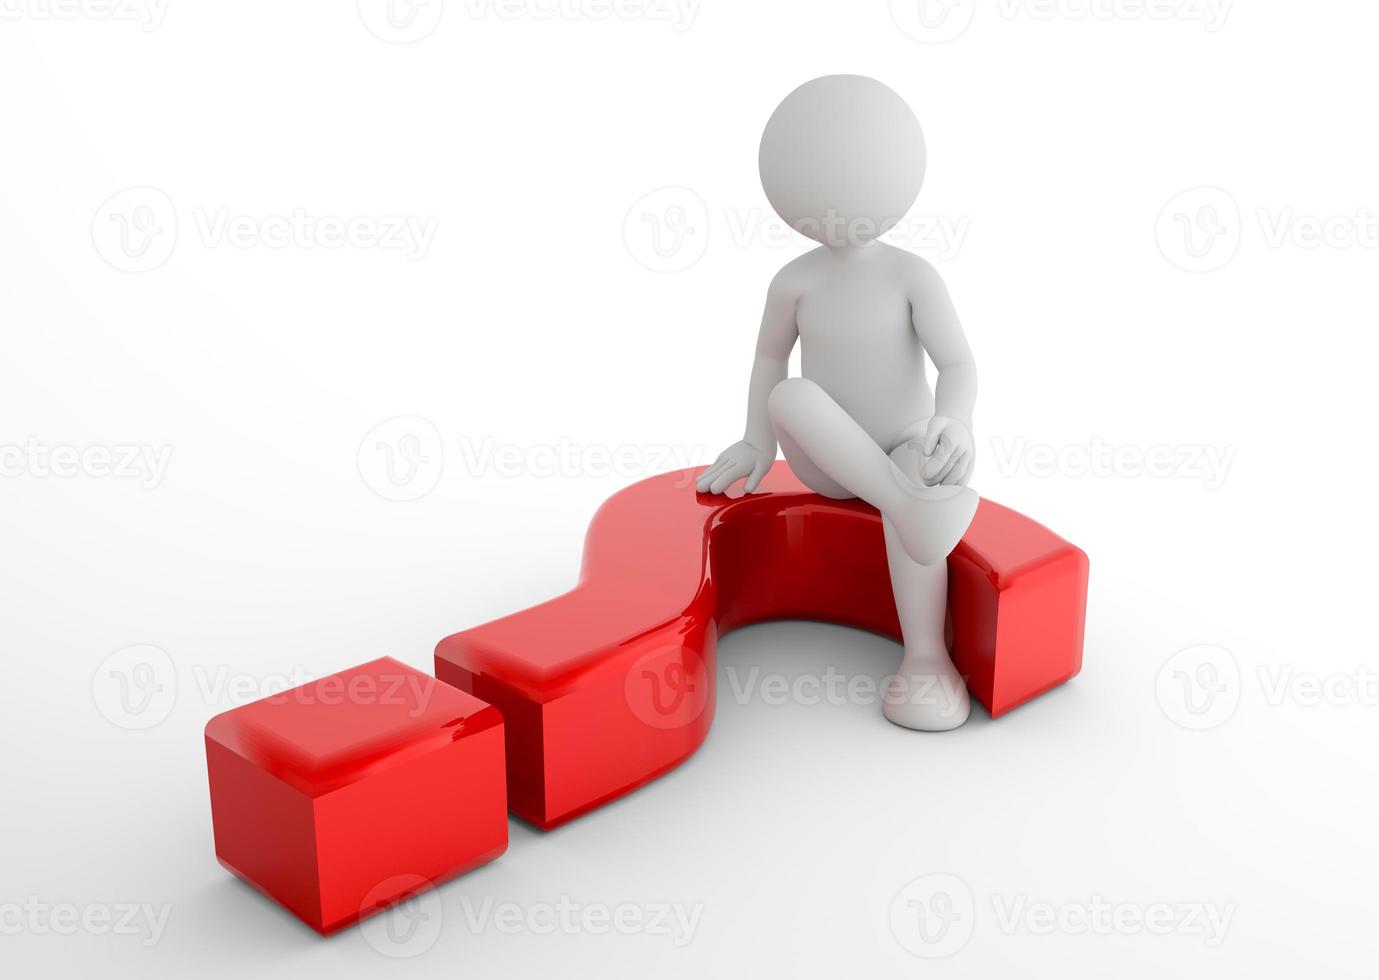 toon homme assis sur un point d'interrogation 3d. FAQ, demander, rechercher des concepts photo